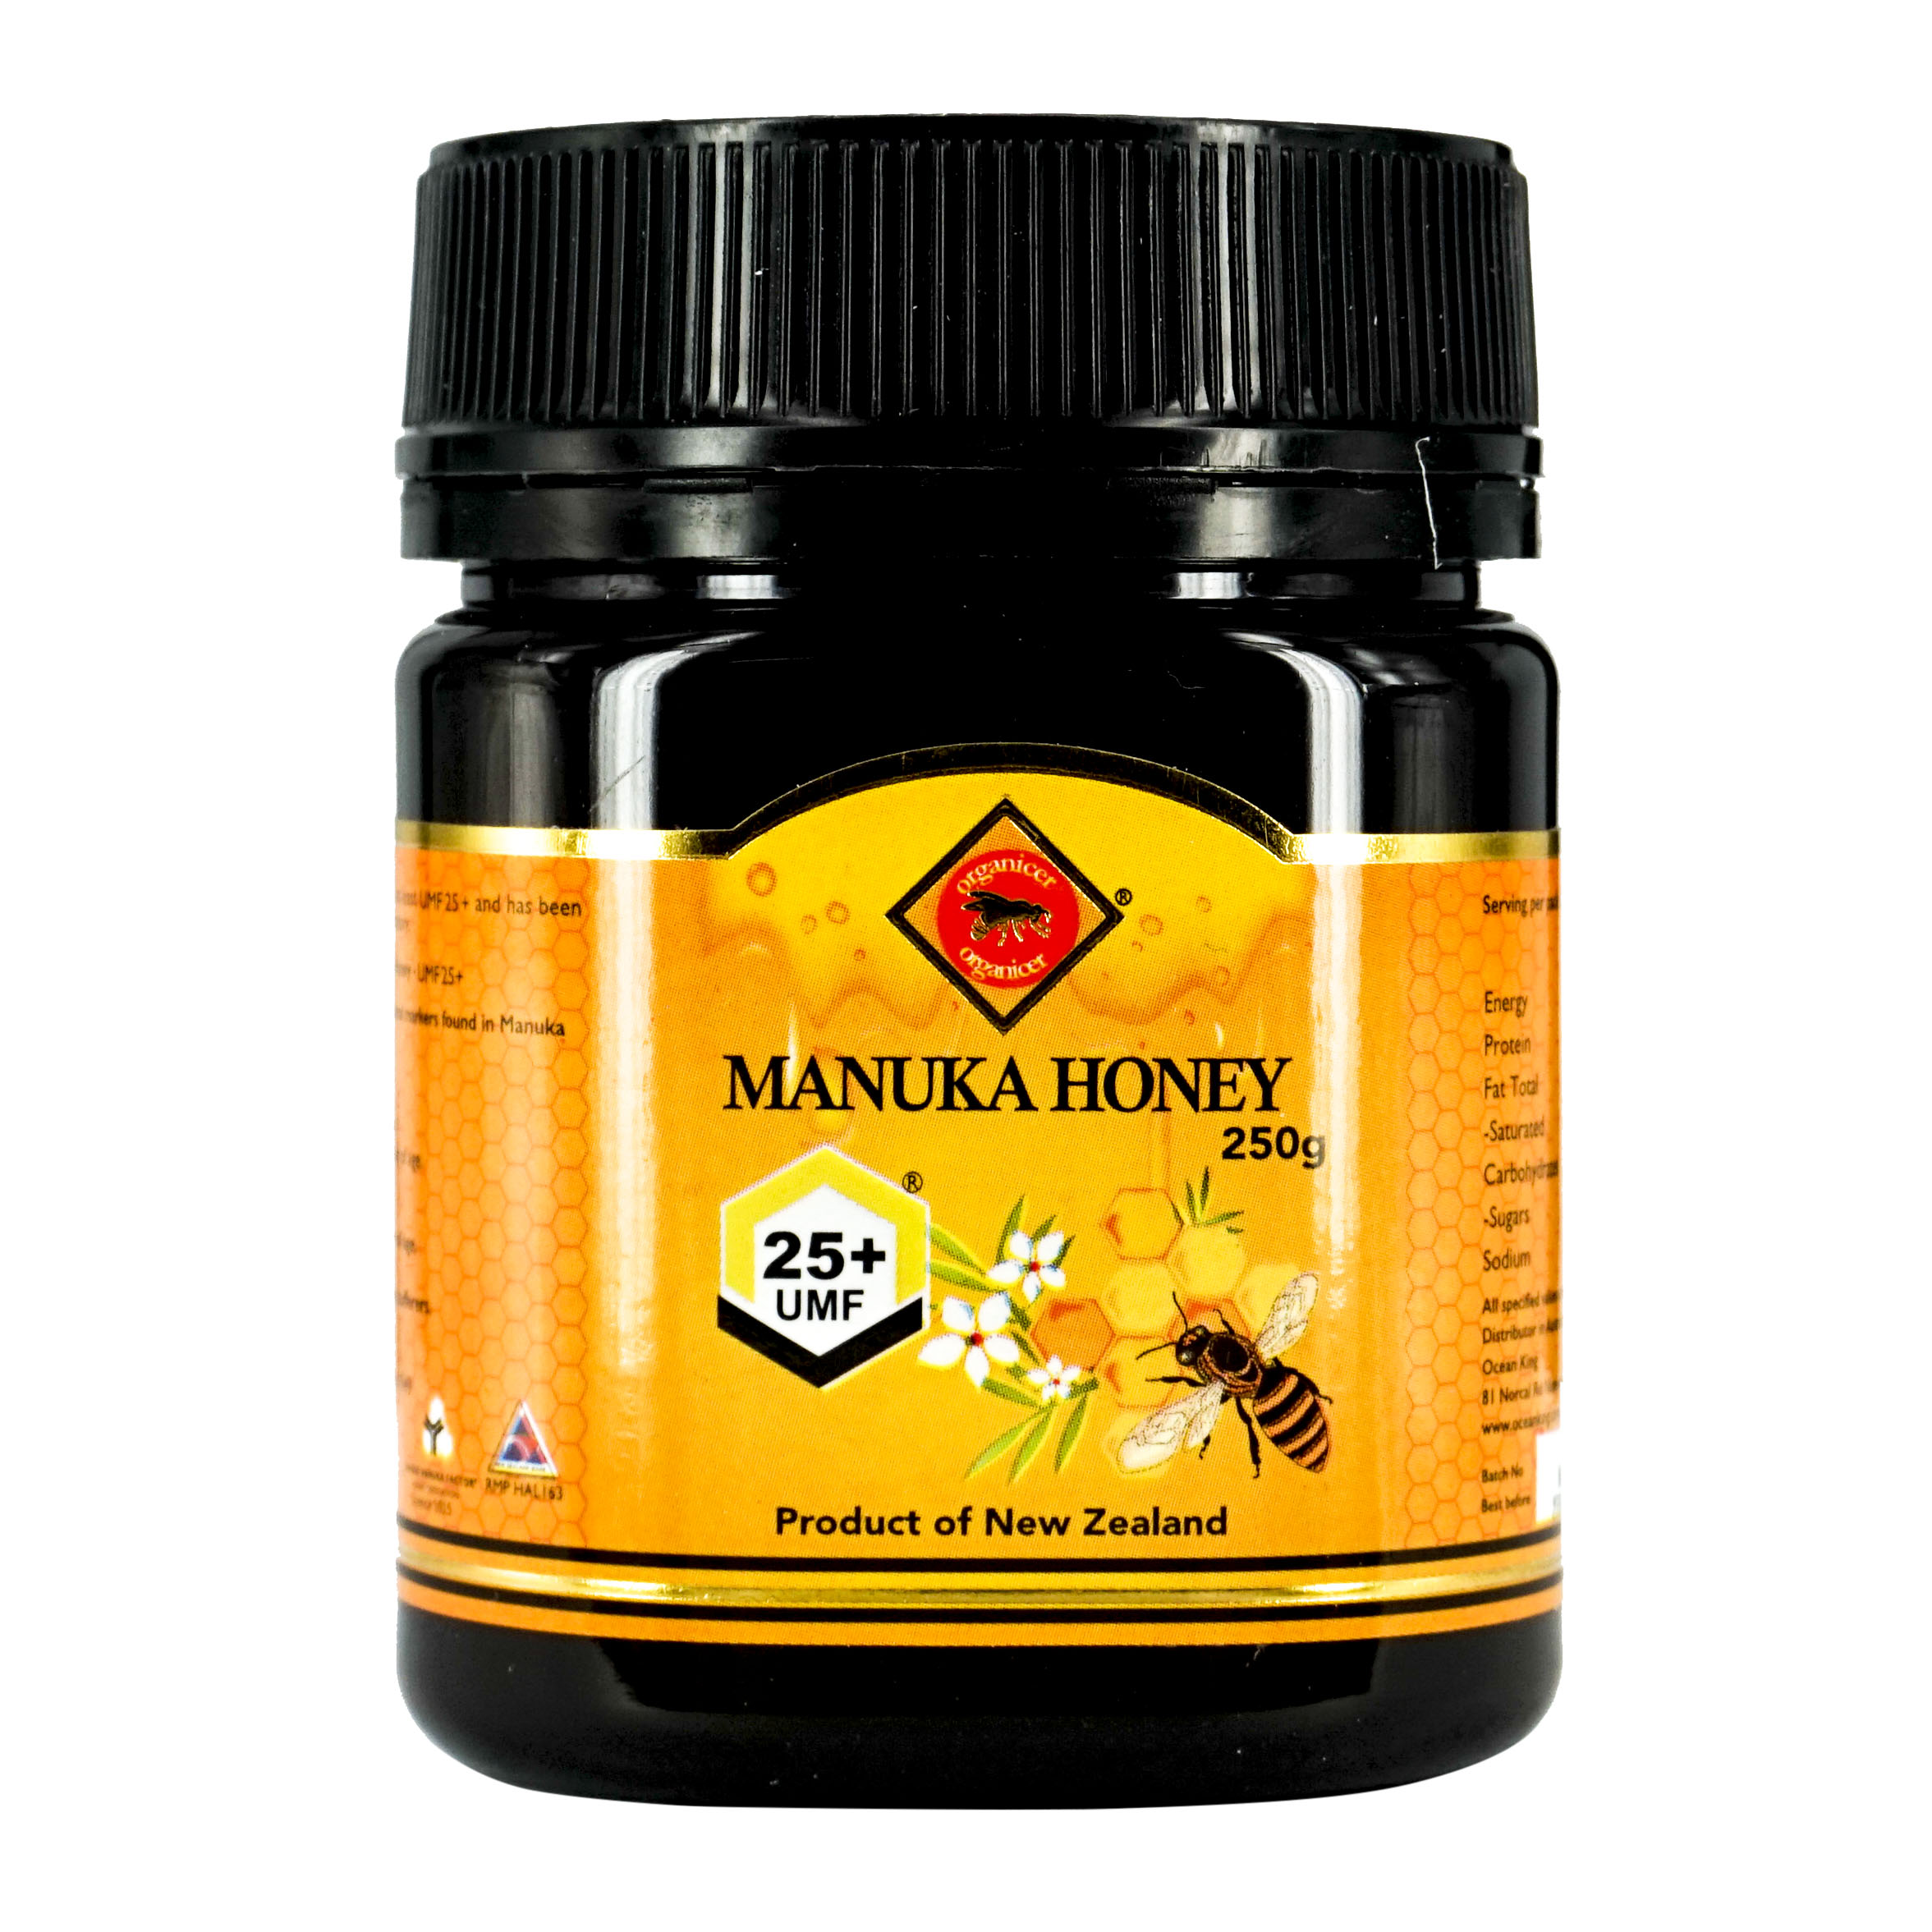 Manuka Honey +25 UFC. Мед 250 грамм. 250g short expirysave 71.7% Teeba natural Honey, 250g. Manuka honey